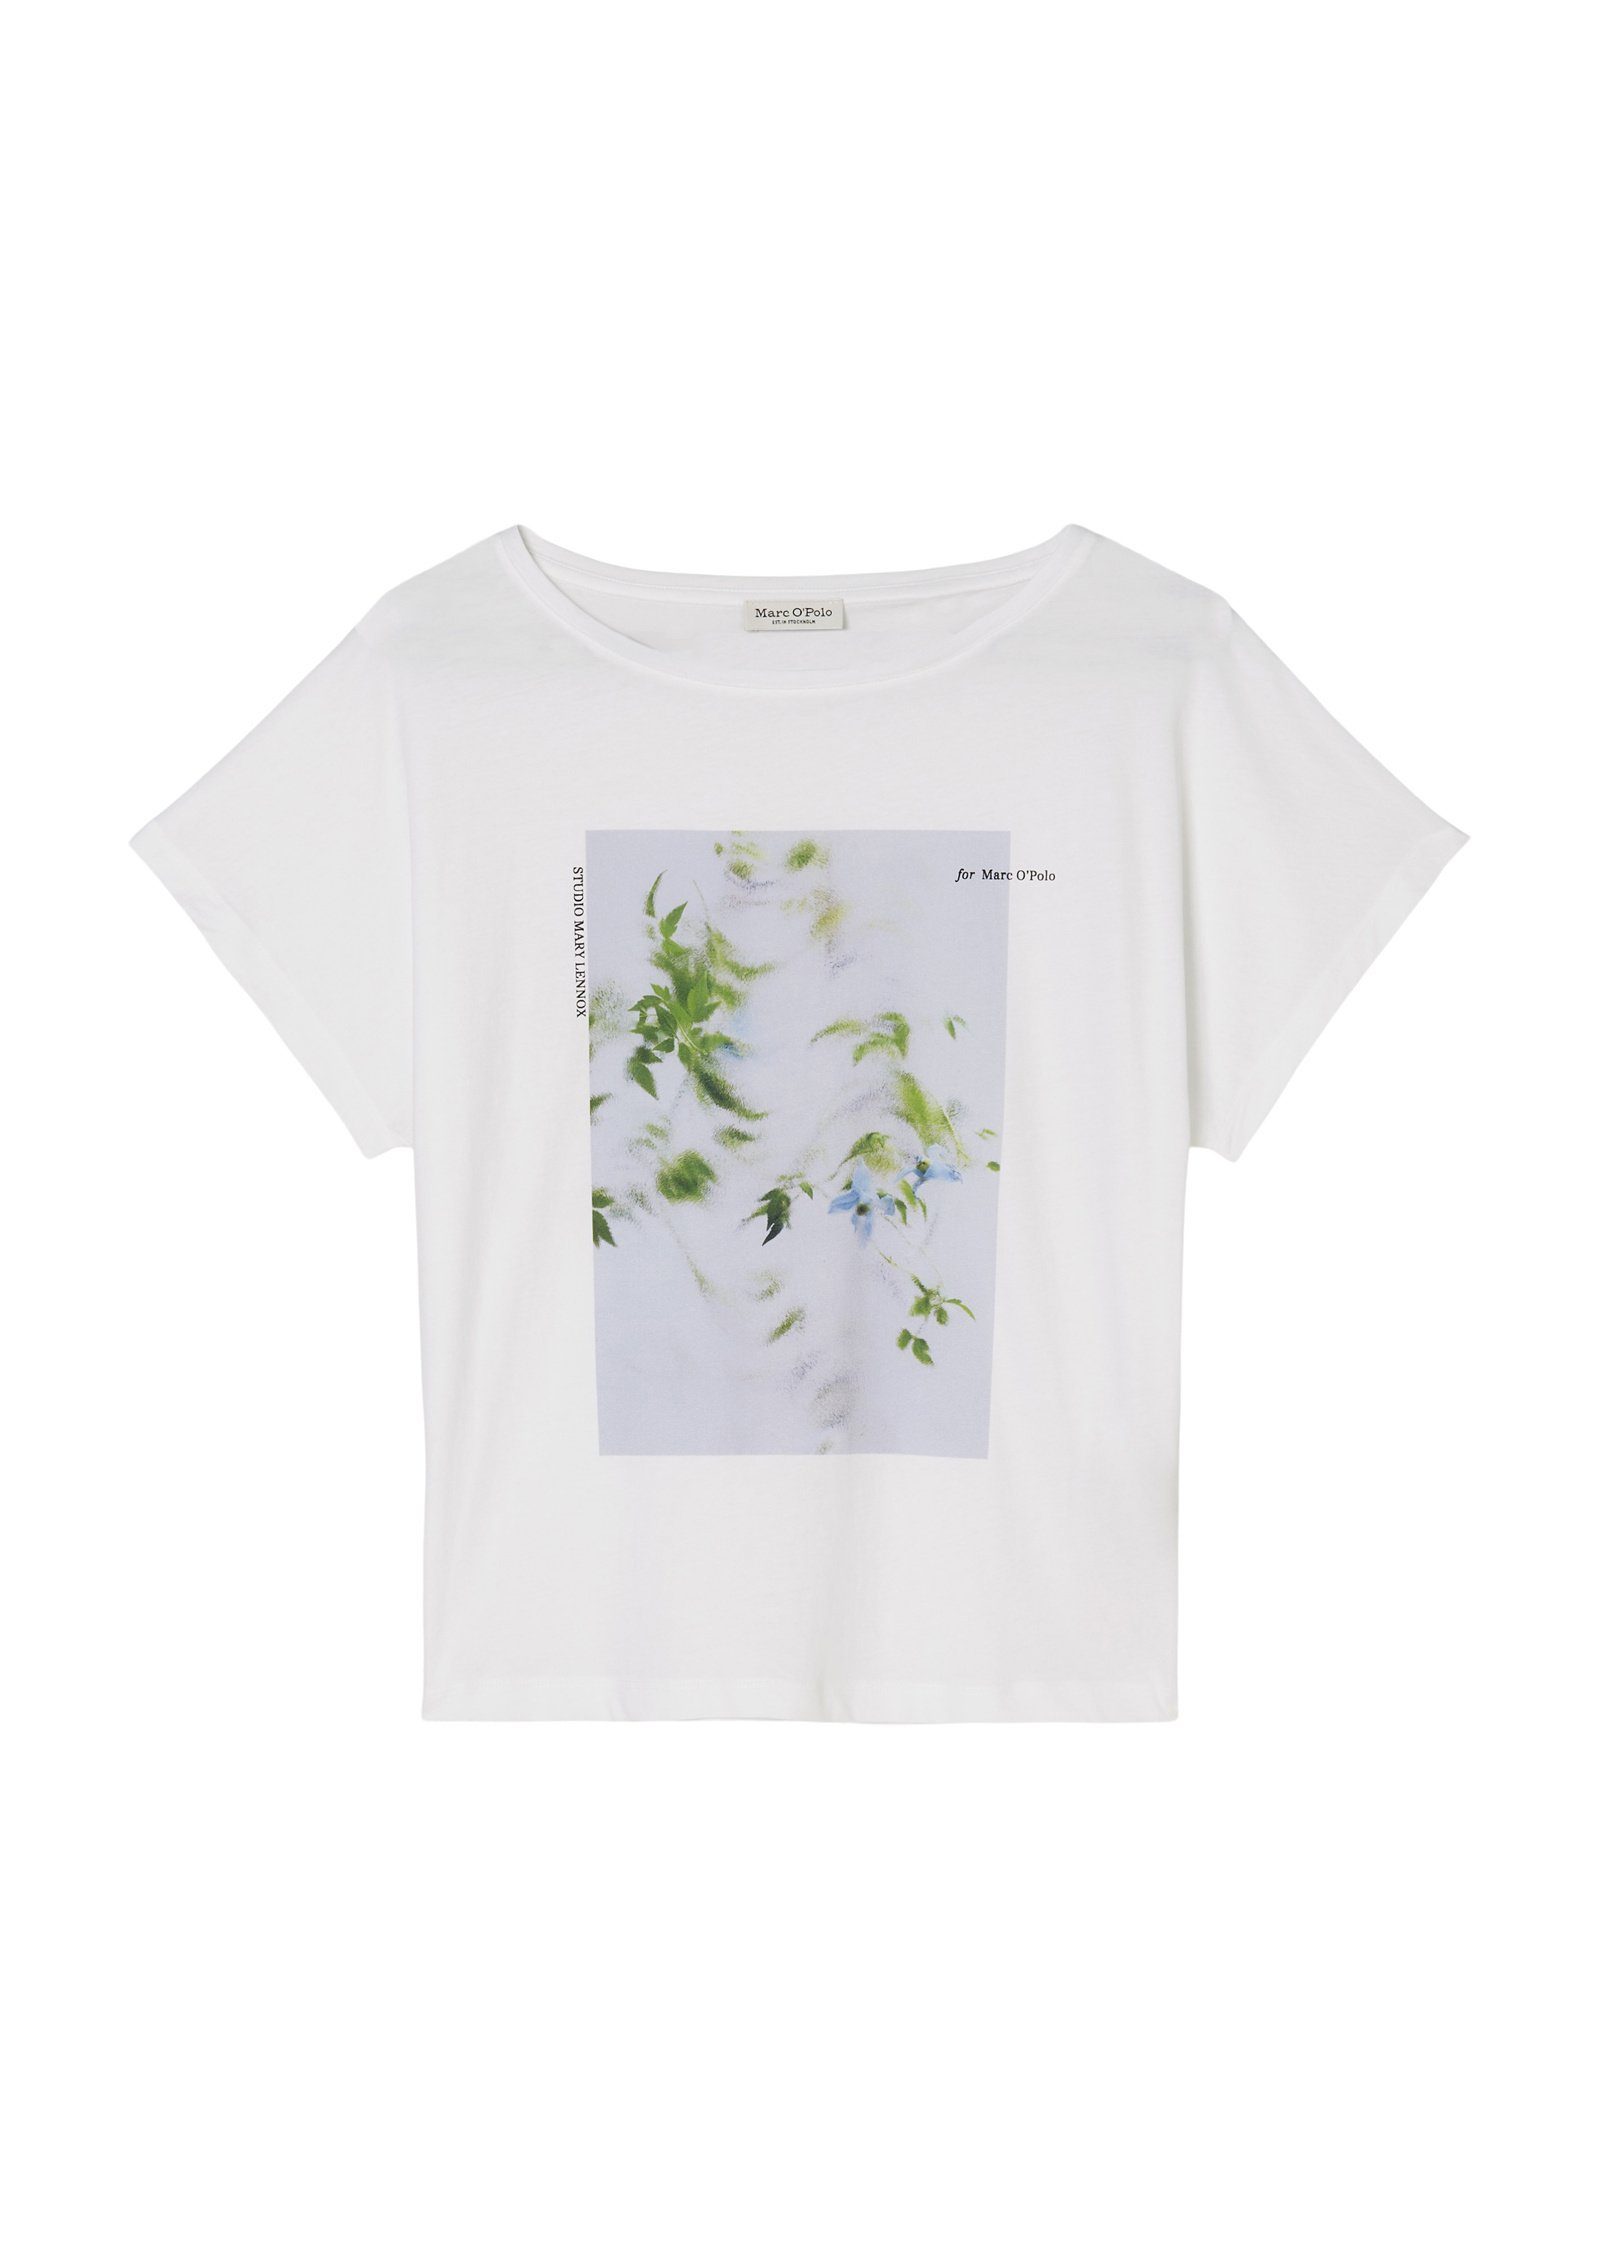 Marc O'Polo T-Shirt mit floralem weiß Foto-Print